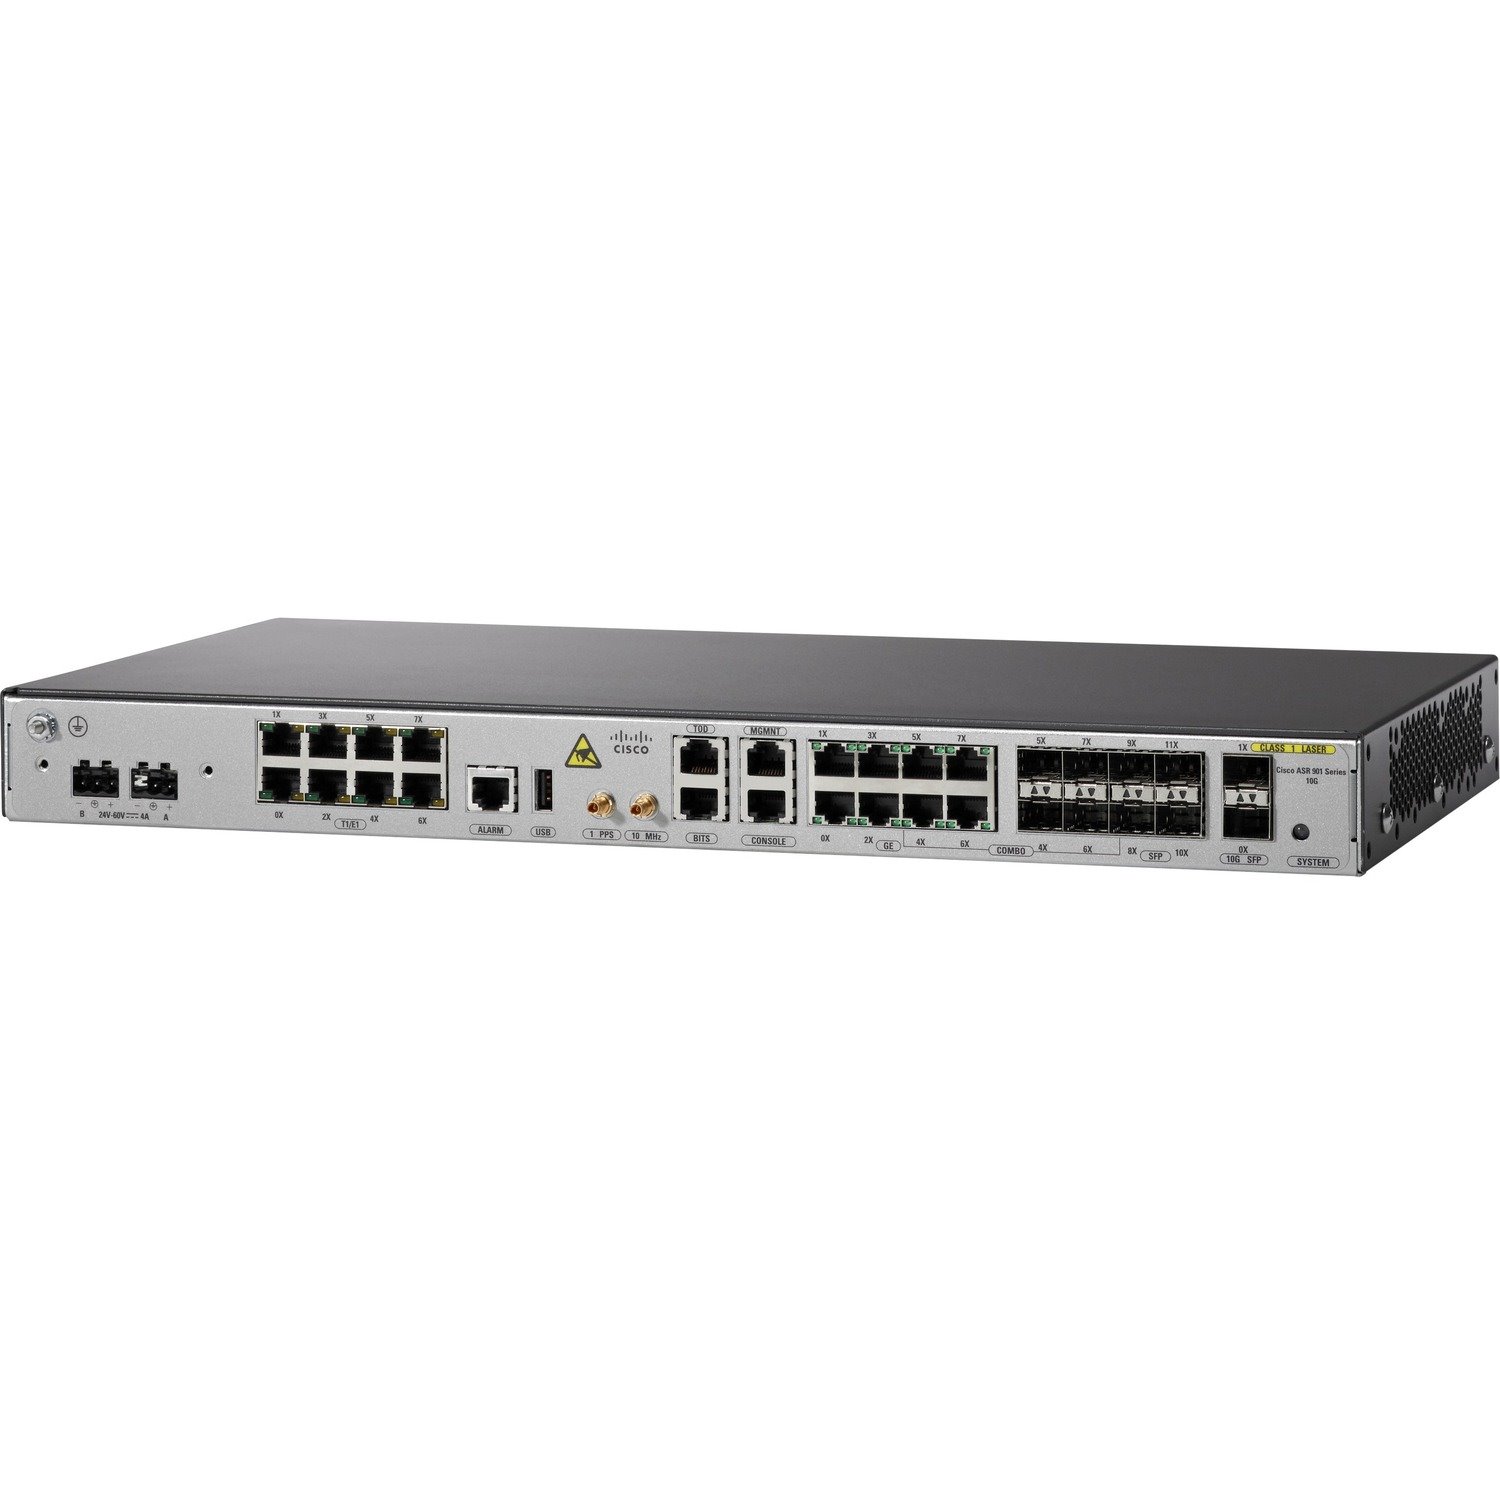 Cisco ASR 901 10G Router - TDM+Ethernet Model - DC Power (A901-6CZ-FT-D)